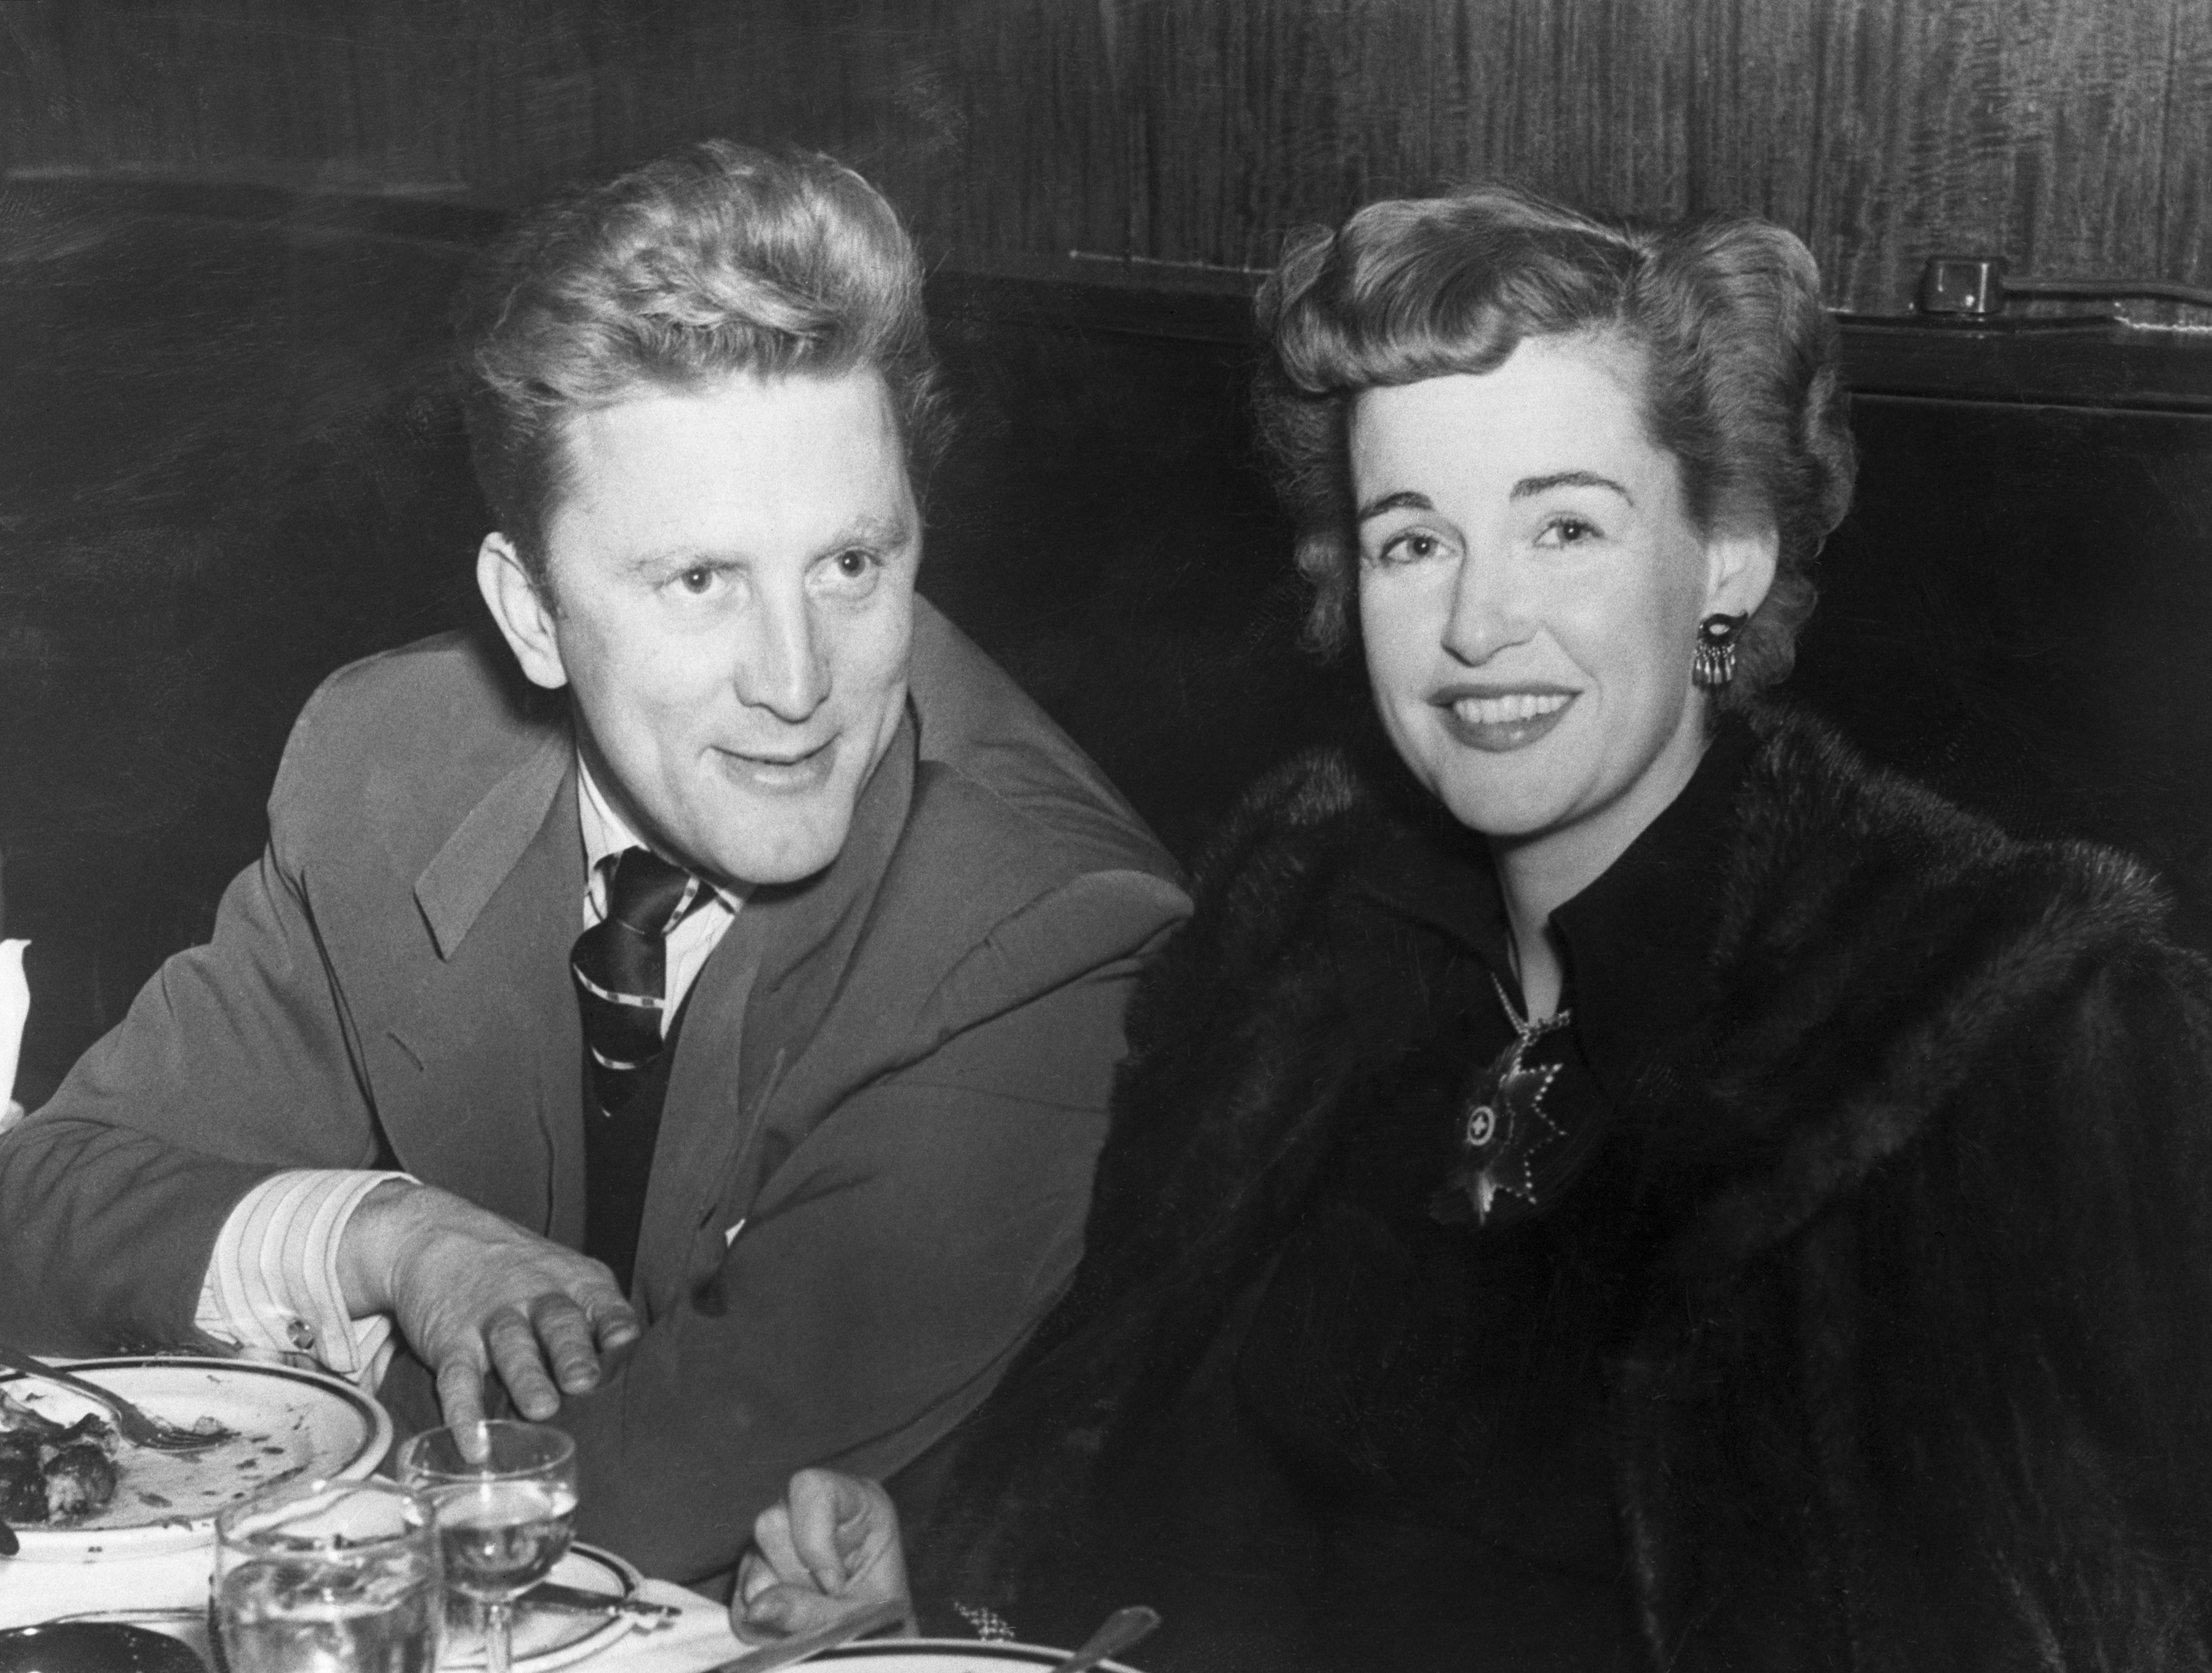 Kirk Douglas, estrella de éxitos en pantalla como "Champion" y "Young Man with a Horn" es fotografiado cenando con su esposa, Diana Douglas, en un popular local nocturno de Nueva York. | Foto: Getty Images